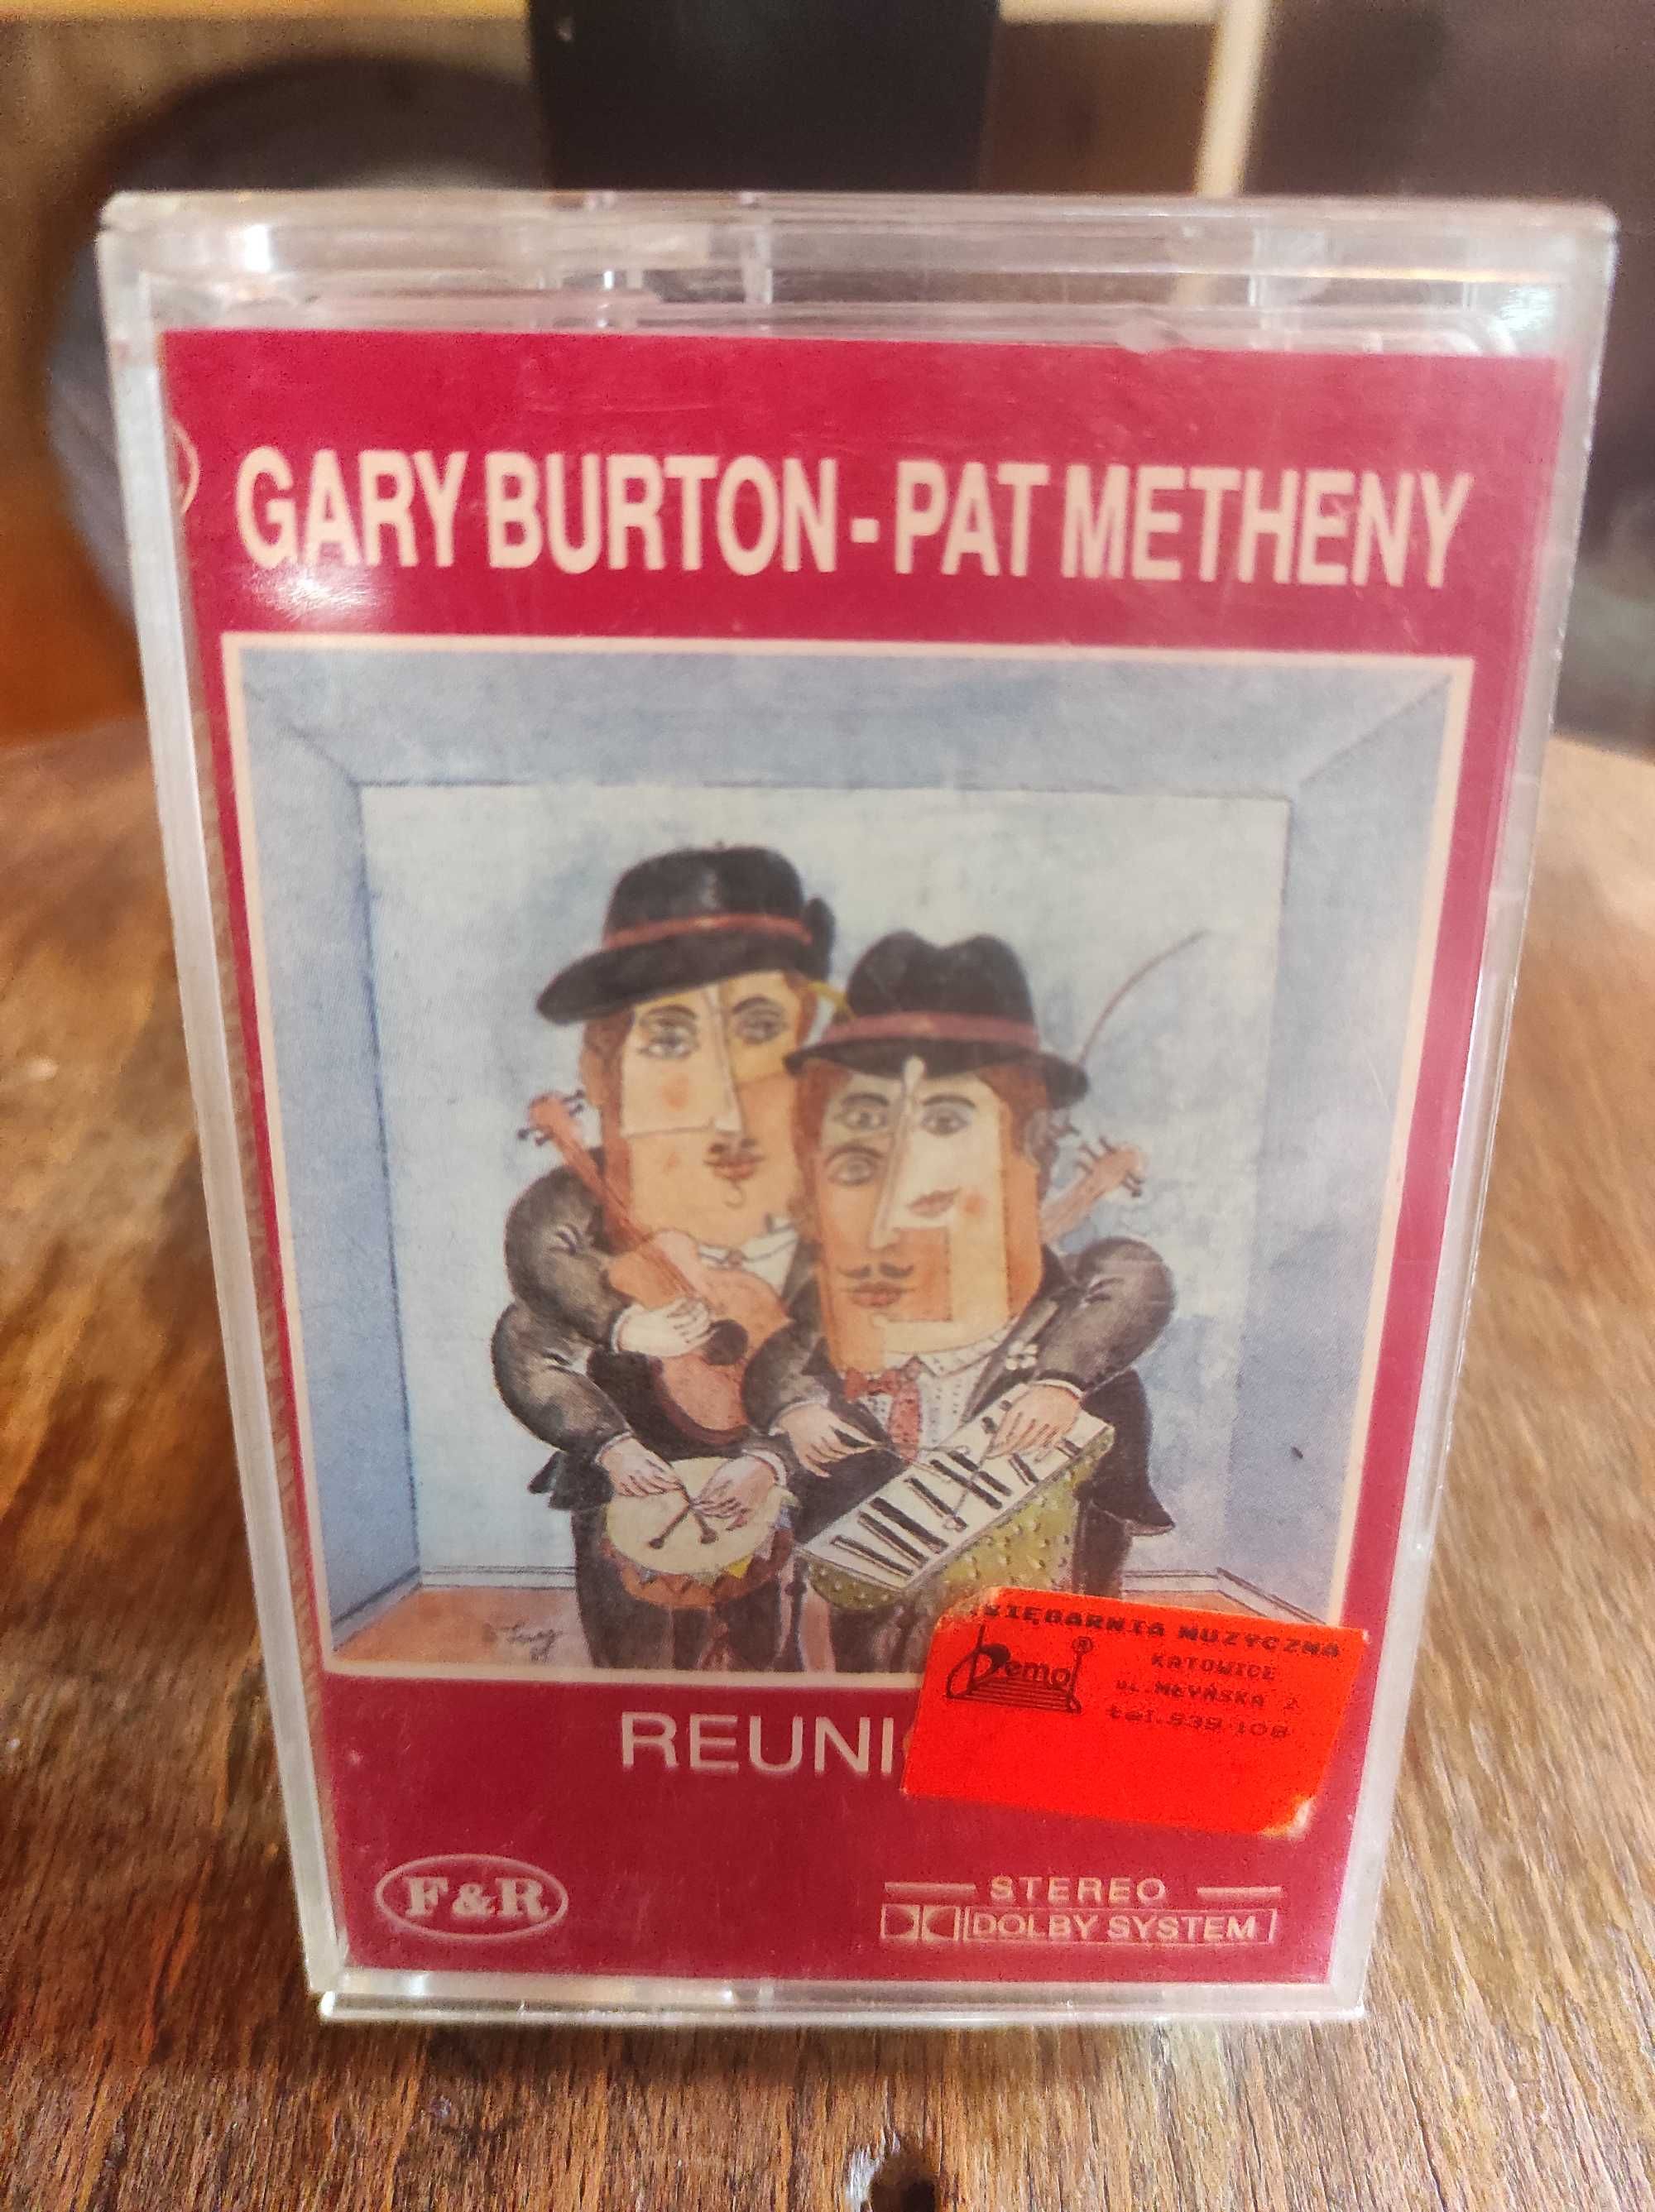 Kaseta Gary Burton - Pat Metheny Reunion